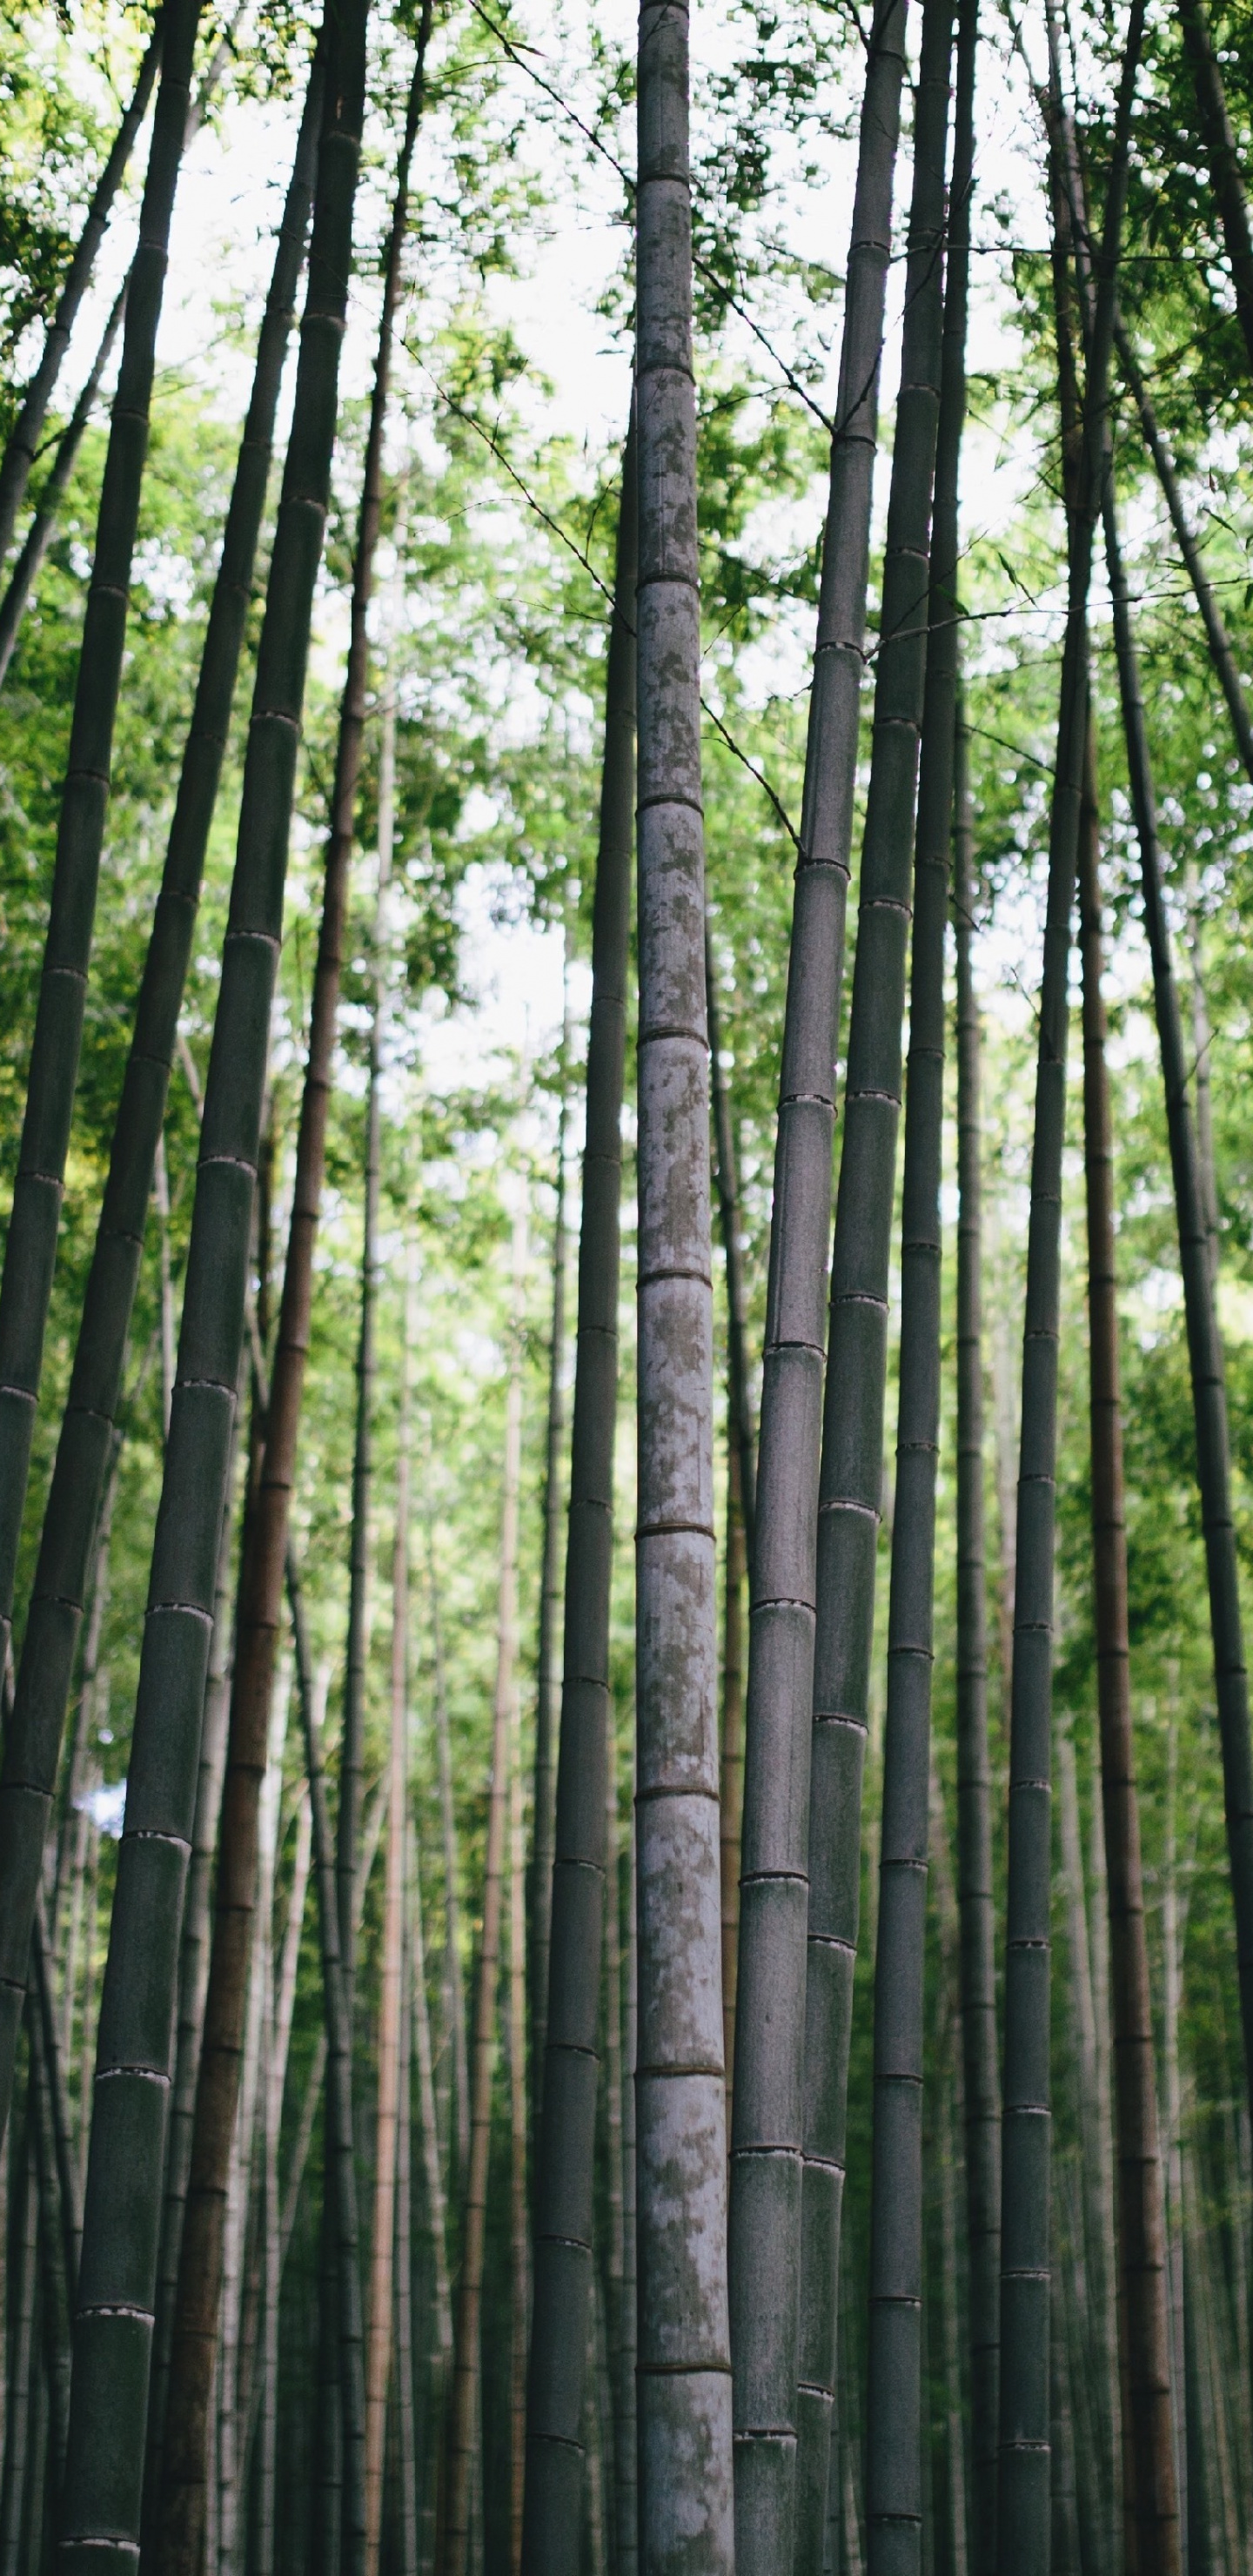 نزدیک ترین عکس از تنه باریک درخت بامبو بلند قامت در چین 